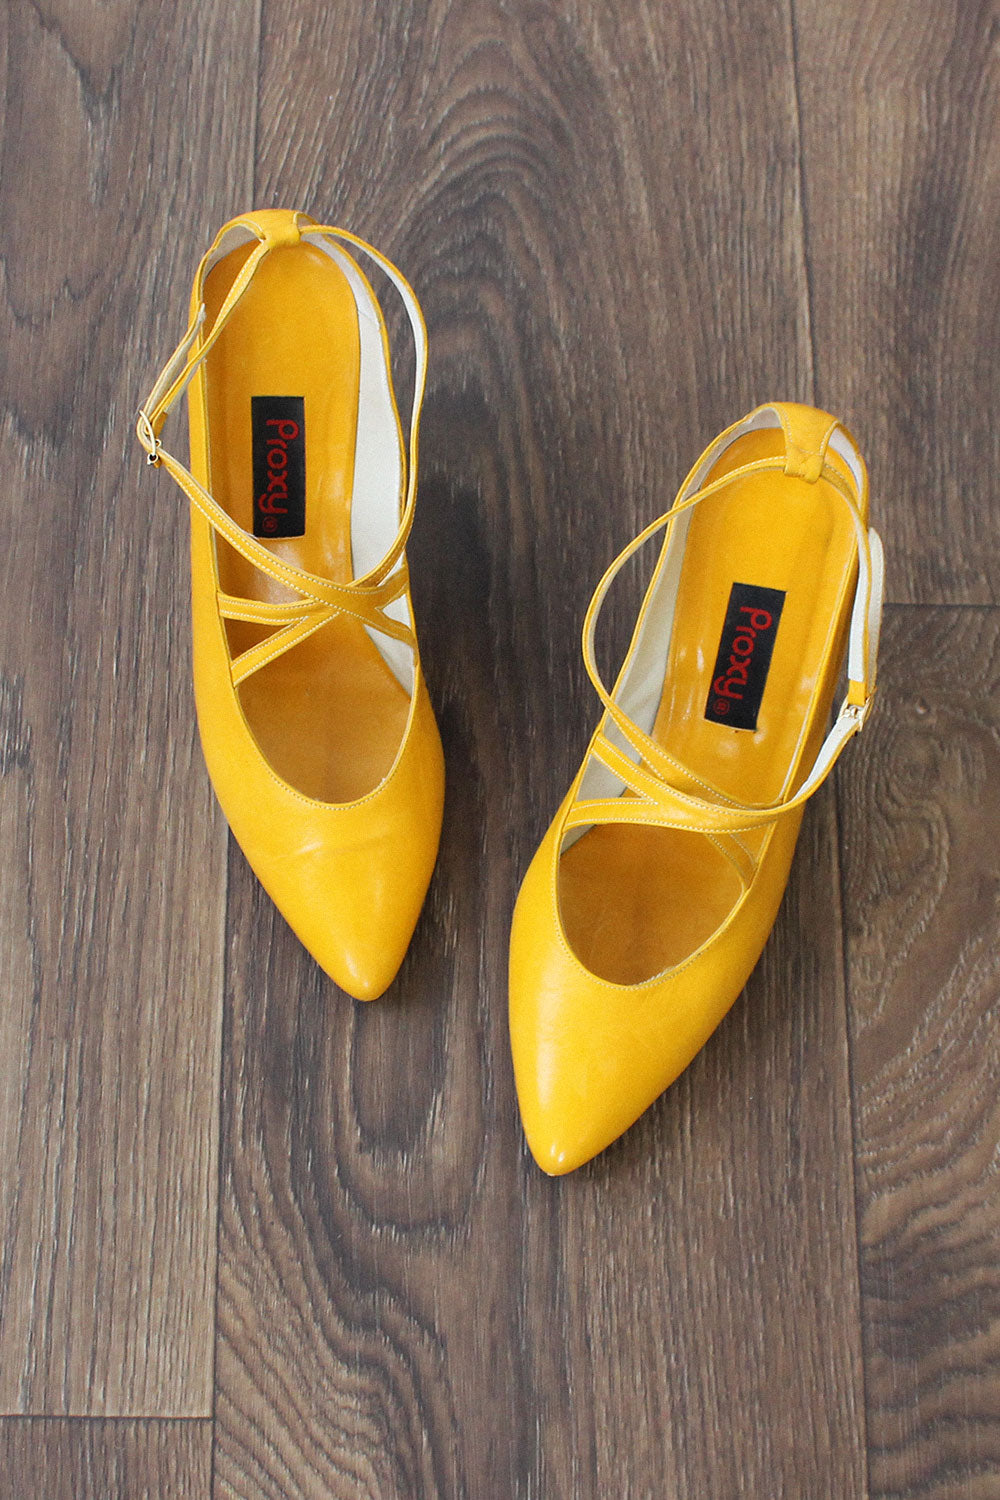 mustard low heels